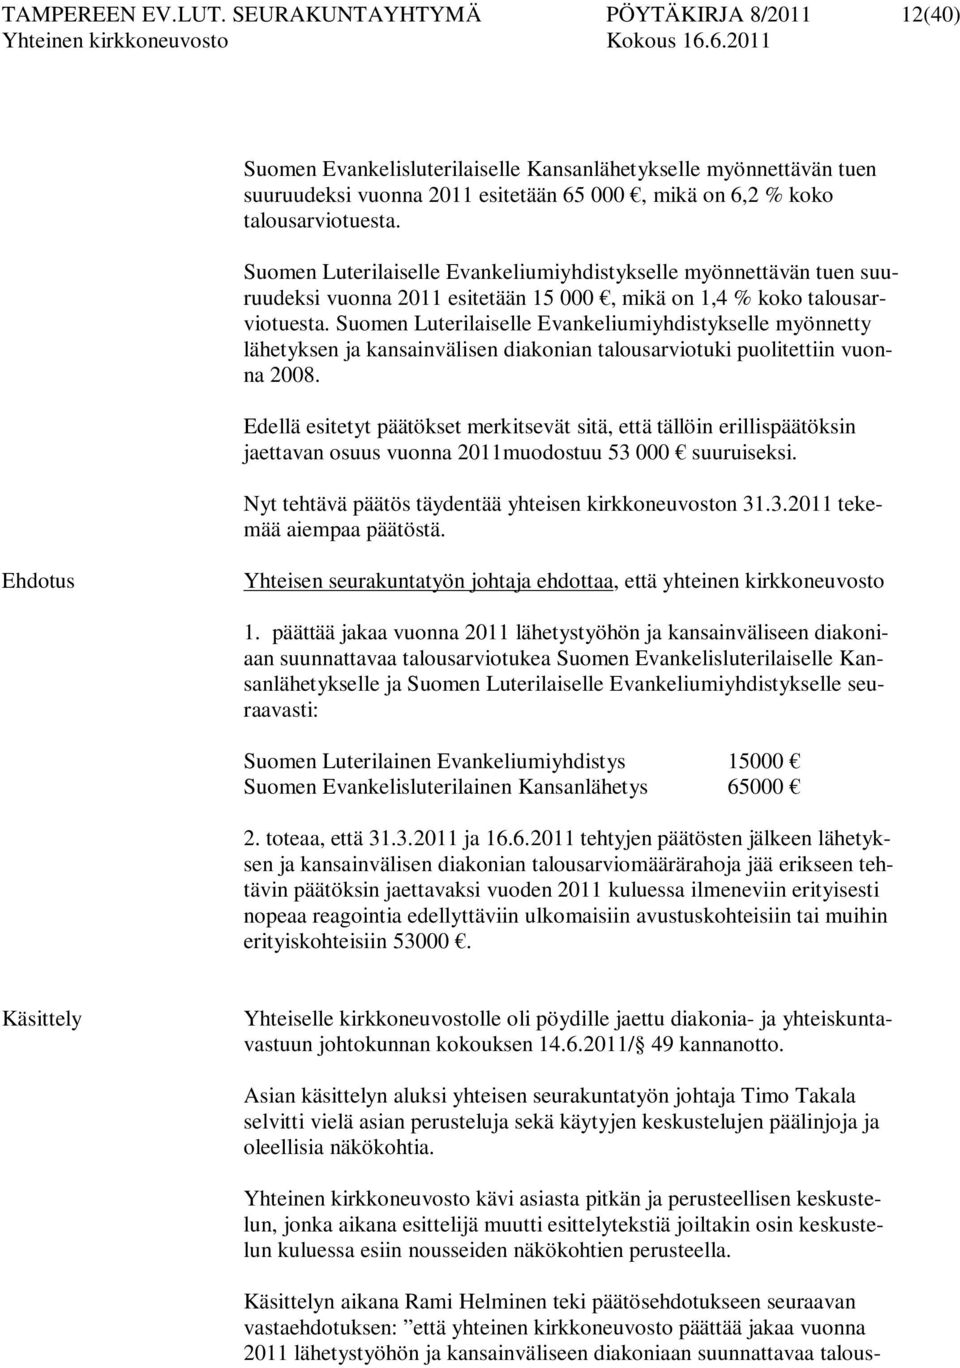 Suomen Luterilaiselle Evankeliumiyhdistykselle myönnettävän tuen suuruudeksi vuonna 2011 esitetään 15 000, mikä on 1,4 % koko talousarviotuesta.